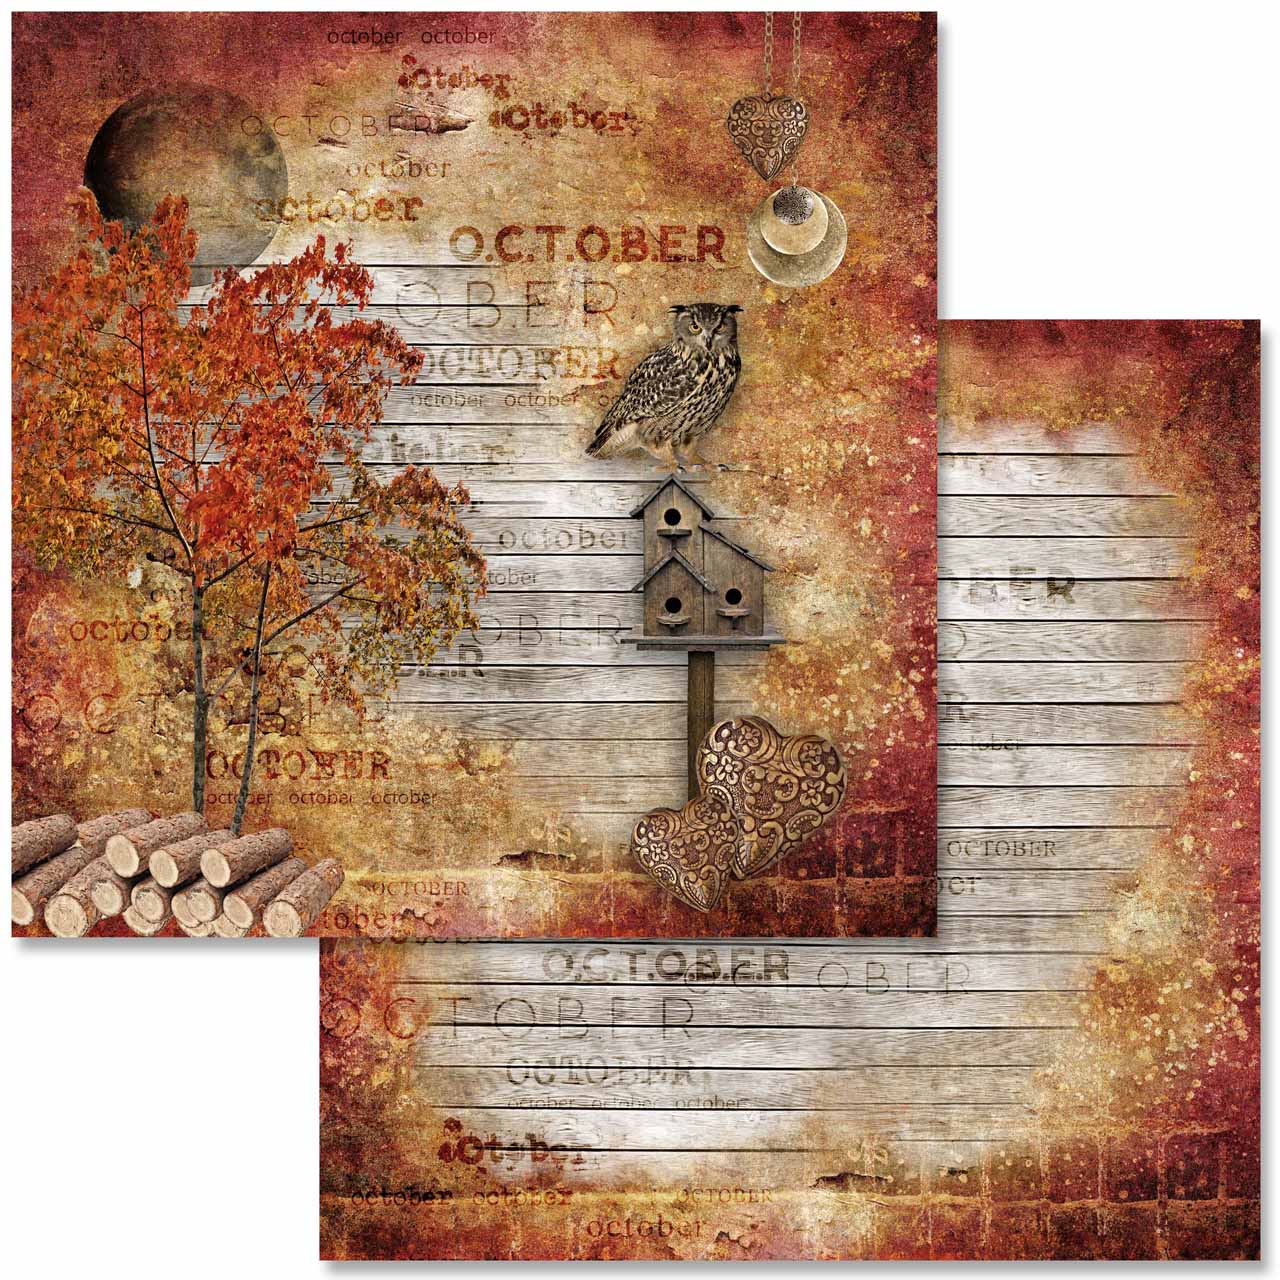 Scrapbook Autumn Album Size 15x20 Cm. 